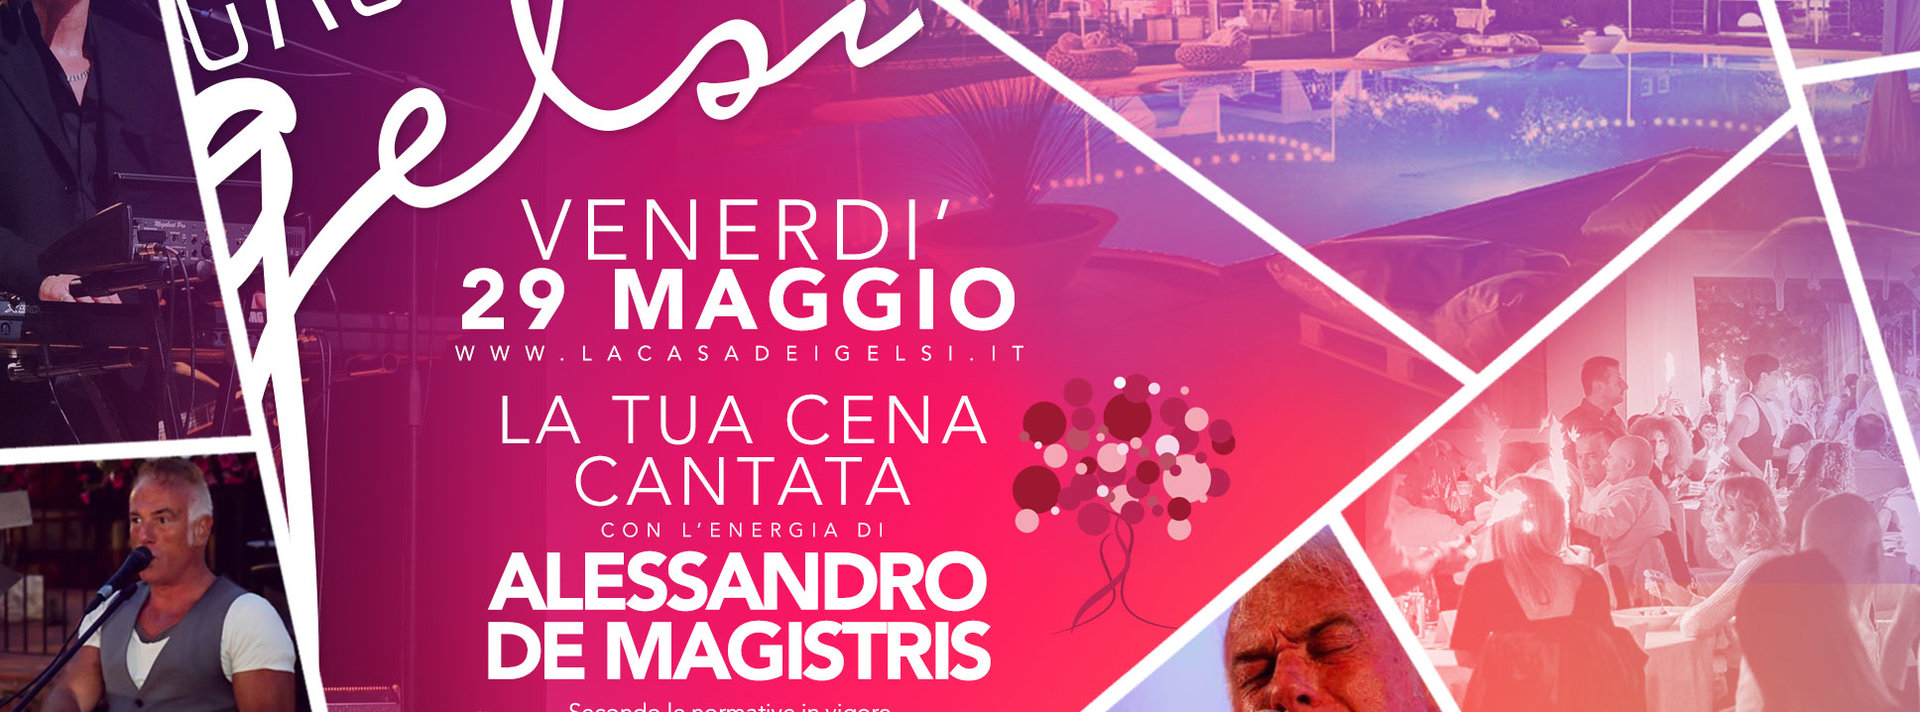 Cena cantata De Magistris ai Gelsi - 29 maggio 202